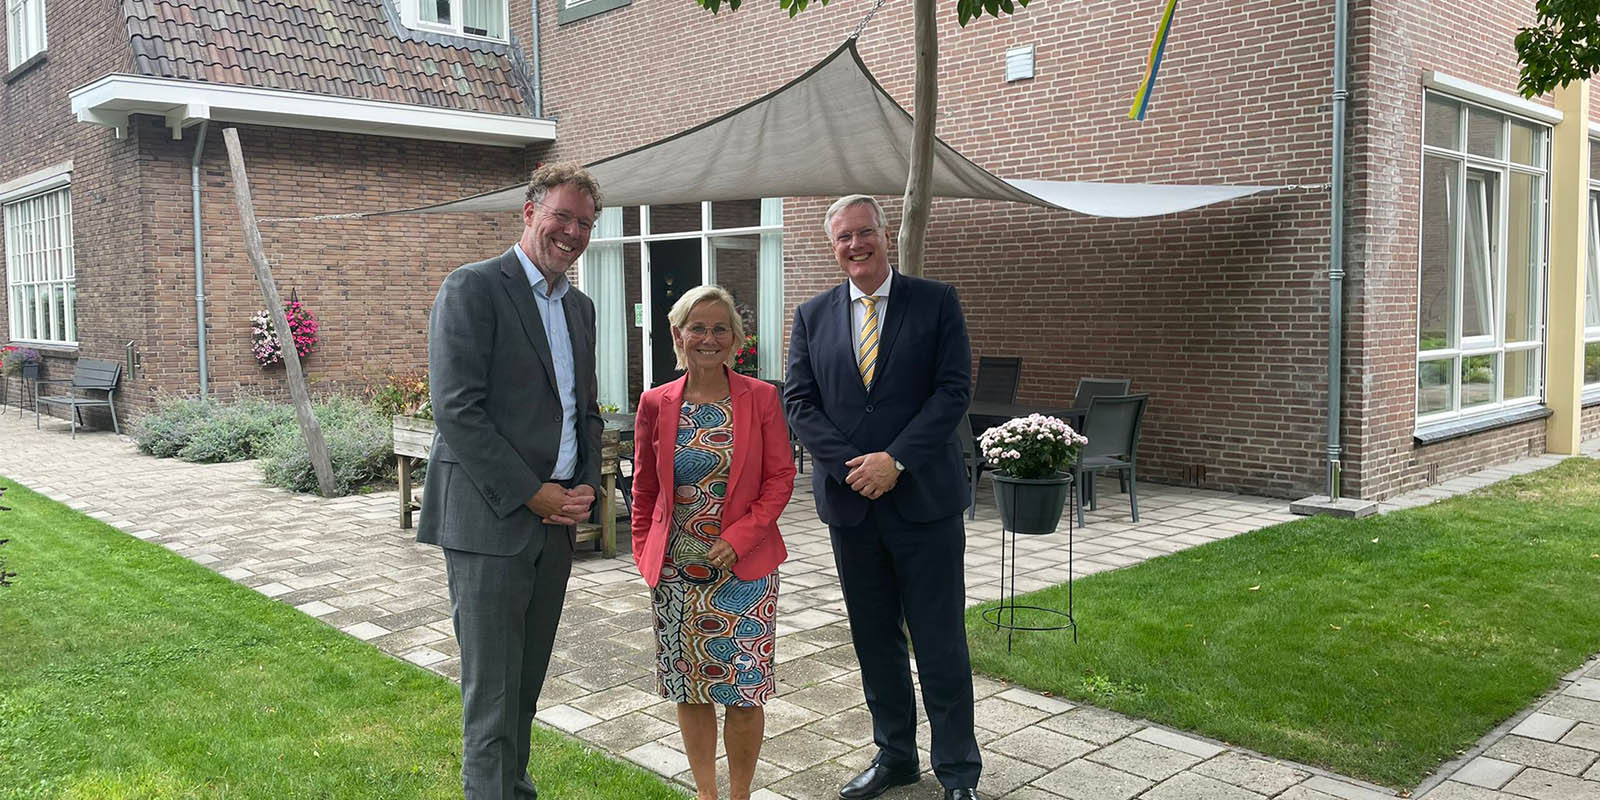 Commissaris van de Koning van de provincie Overijssel, Andries Heidema, bracht een bezoek aan Het Hofstedehuis in Raalte. Heidema staat voor het huis op de foto met de locatiemanager van het huis en de directeur van Dagelijks Leven.